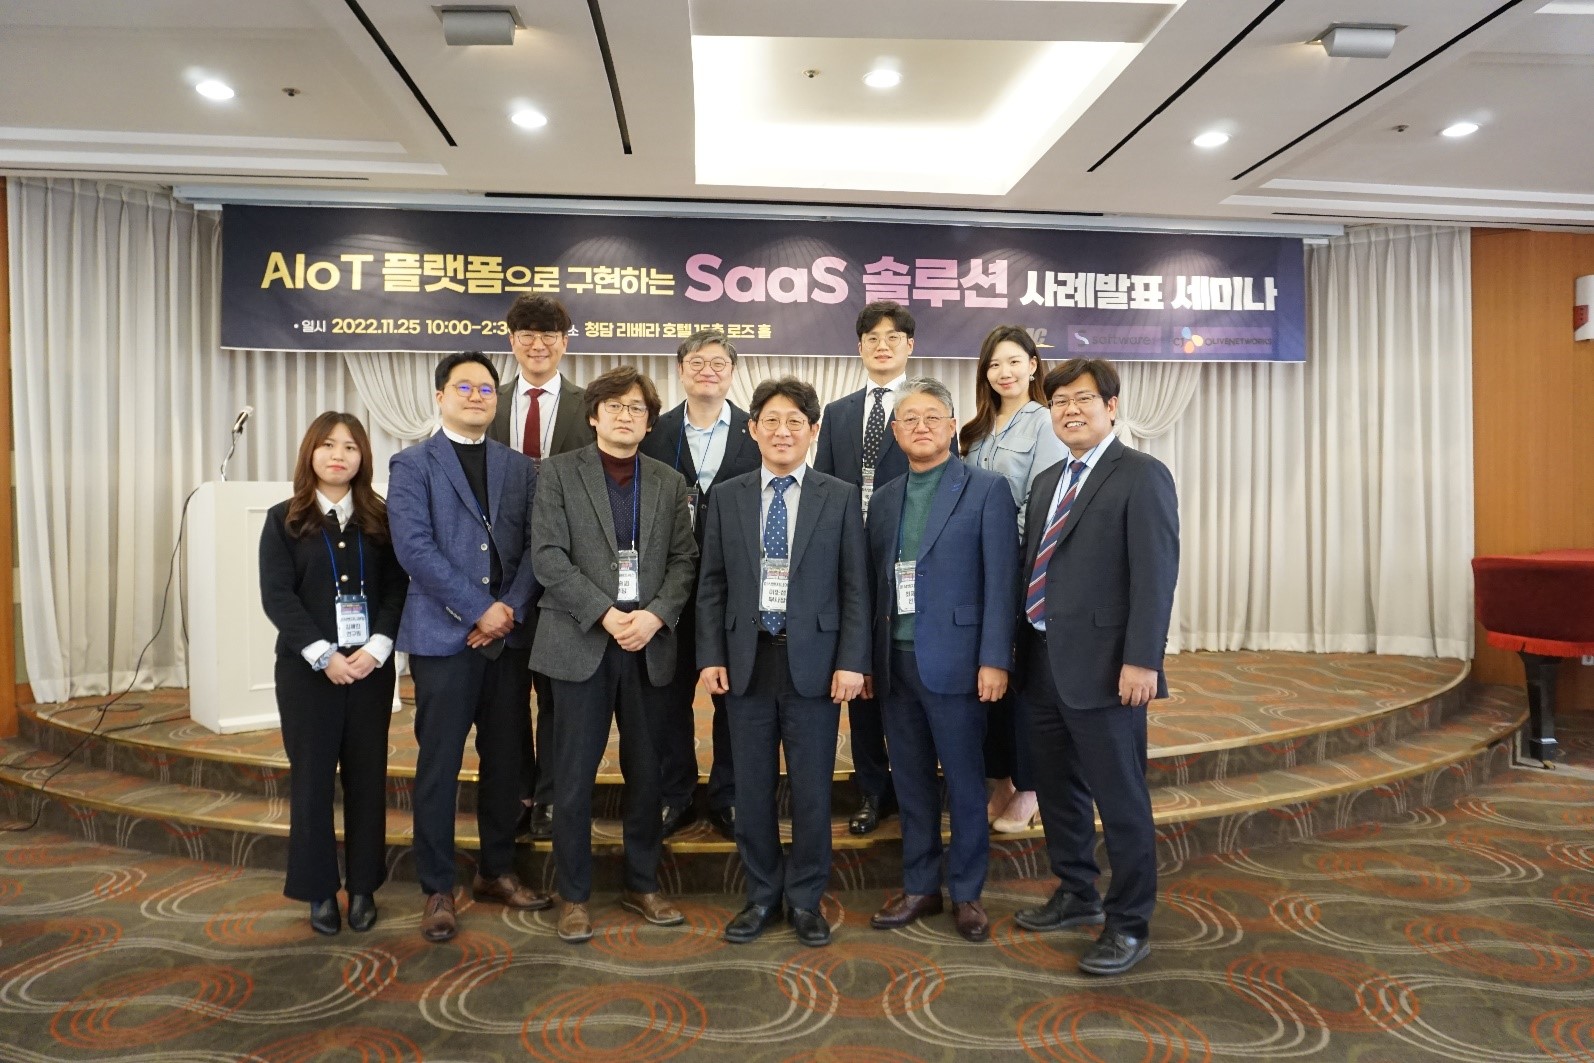 AIoT 플랫폼으로 구현하는 SaaS 솔루션 세미나 개최